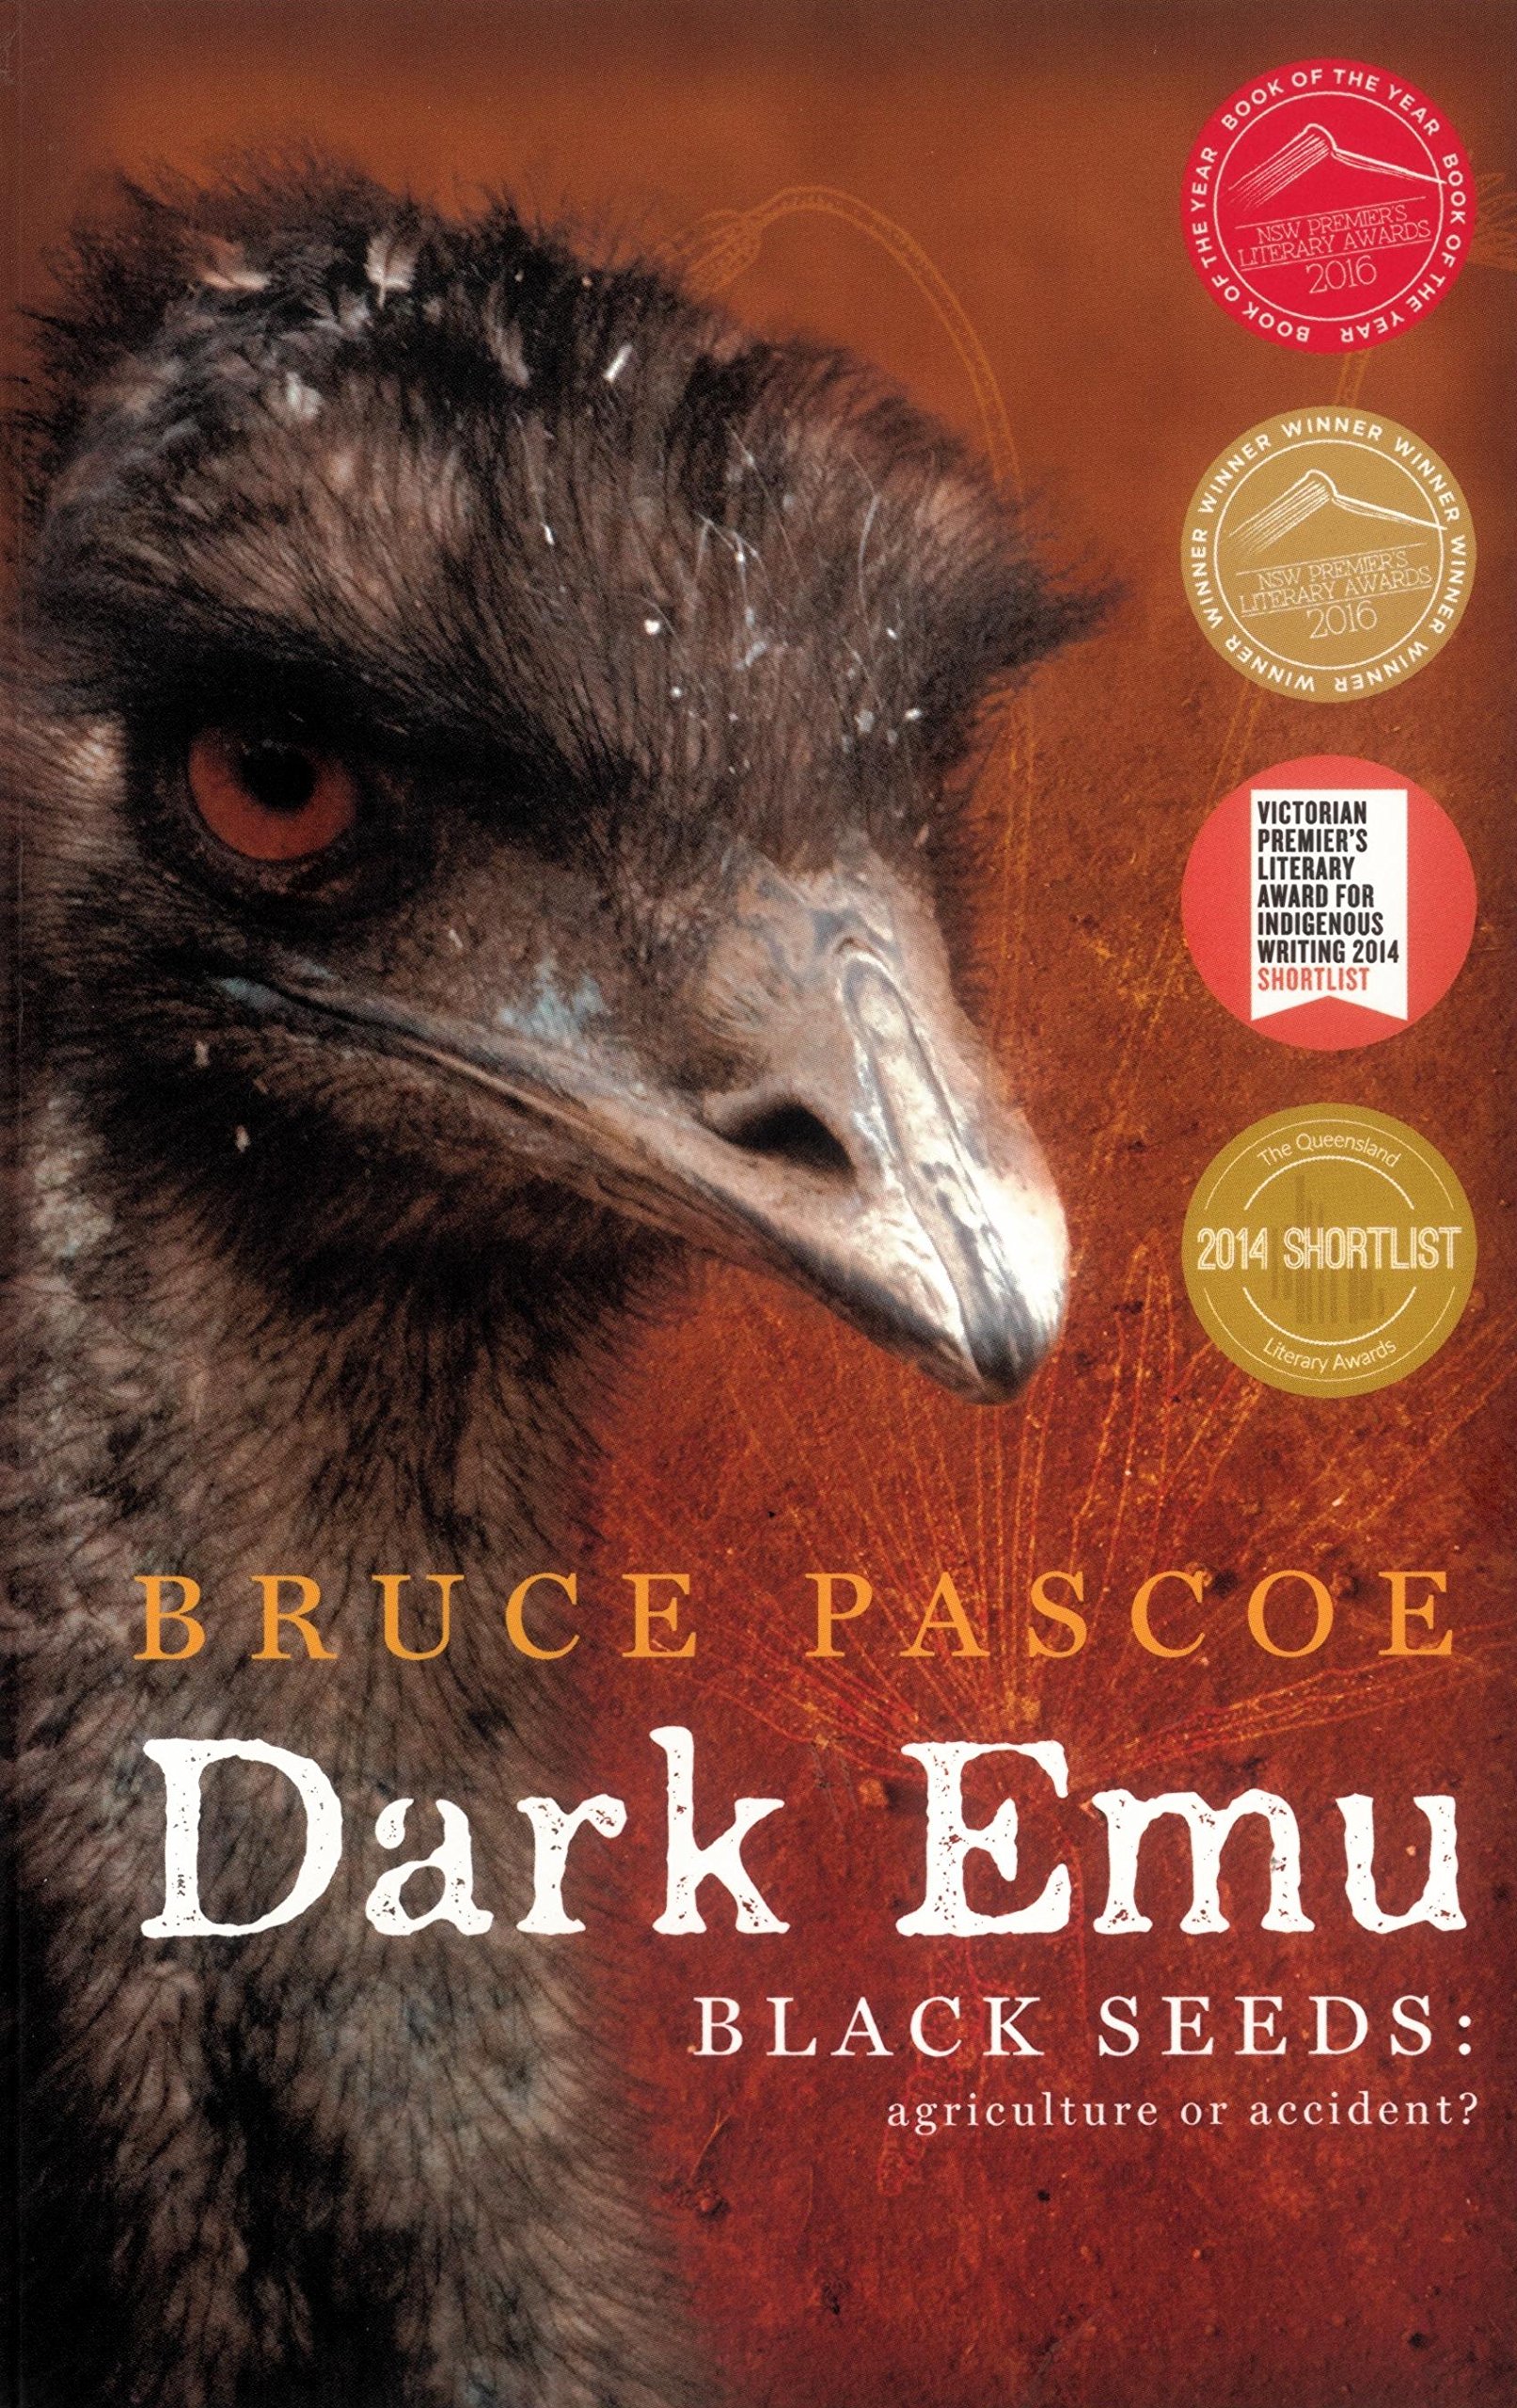 Bruce Pascoe und Dark Emu: Ein Green Library Gespräch (Teil 2)